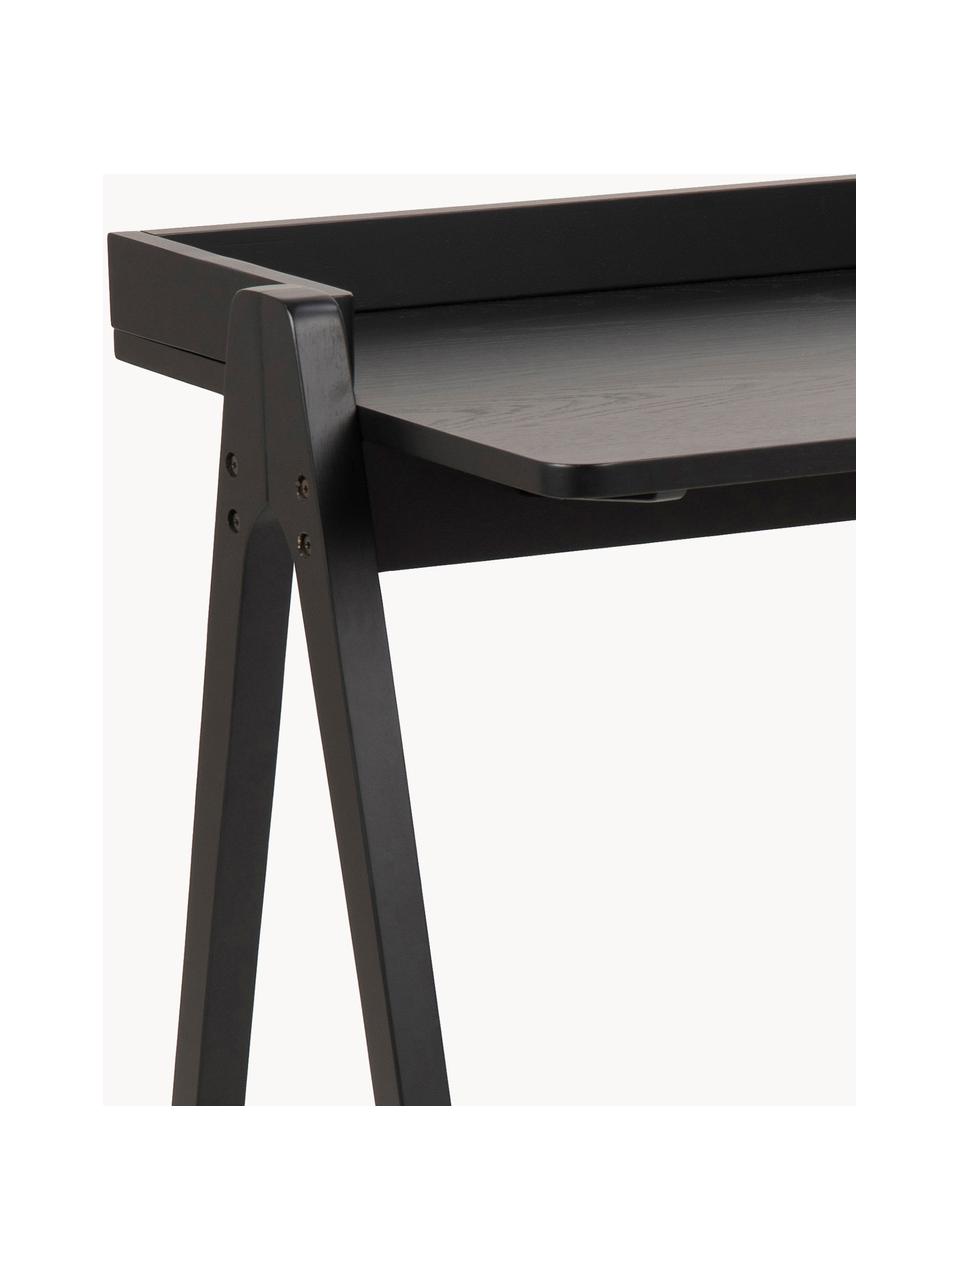 Moderní psací stůl z kaučukového dřeva Miso, Lakované kaučukové dřevo, Kaučukové dřevo, lakováno černou barvou, Š 127 cm, H 52 cm